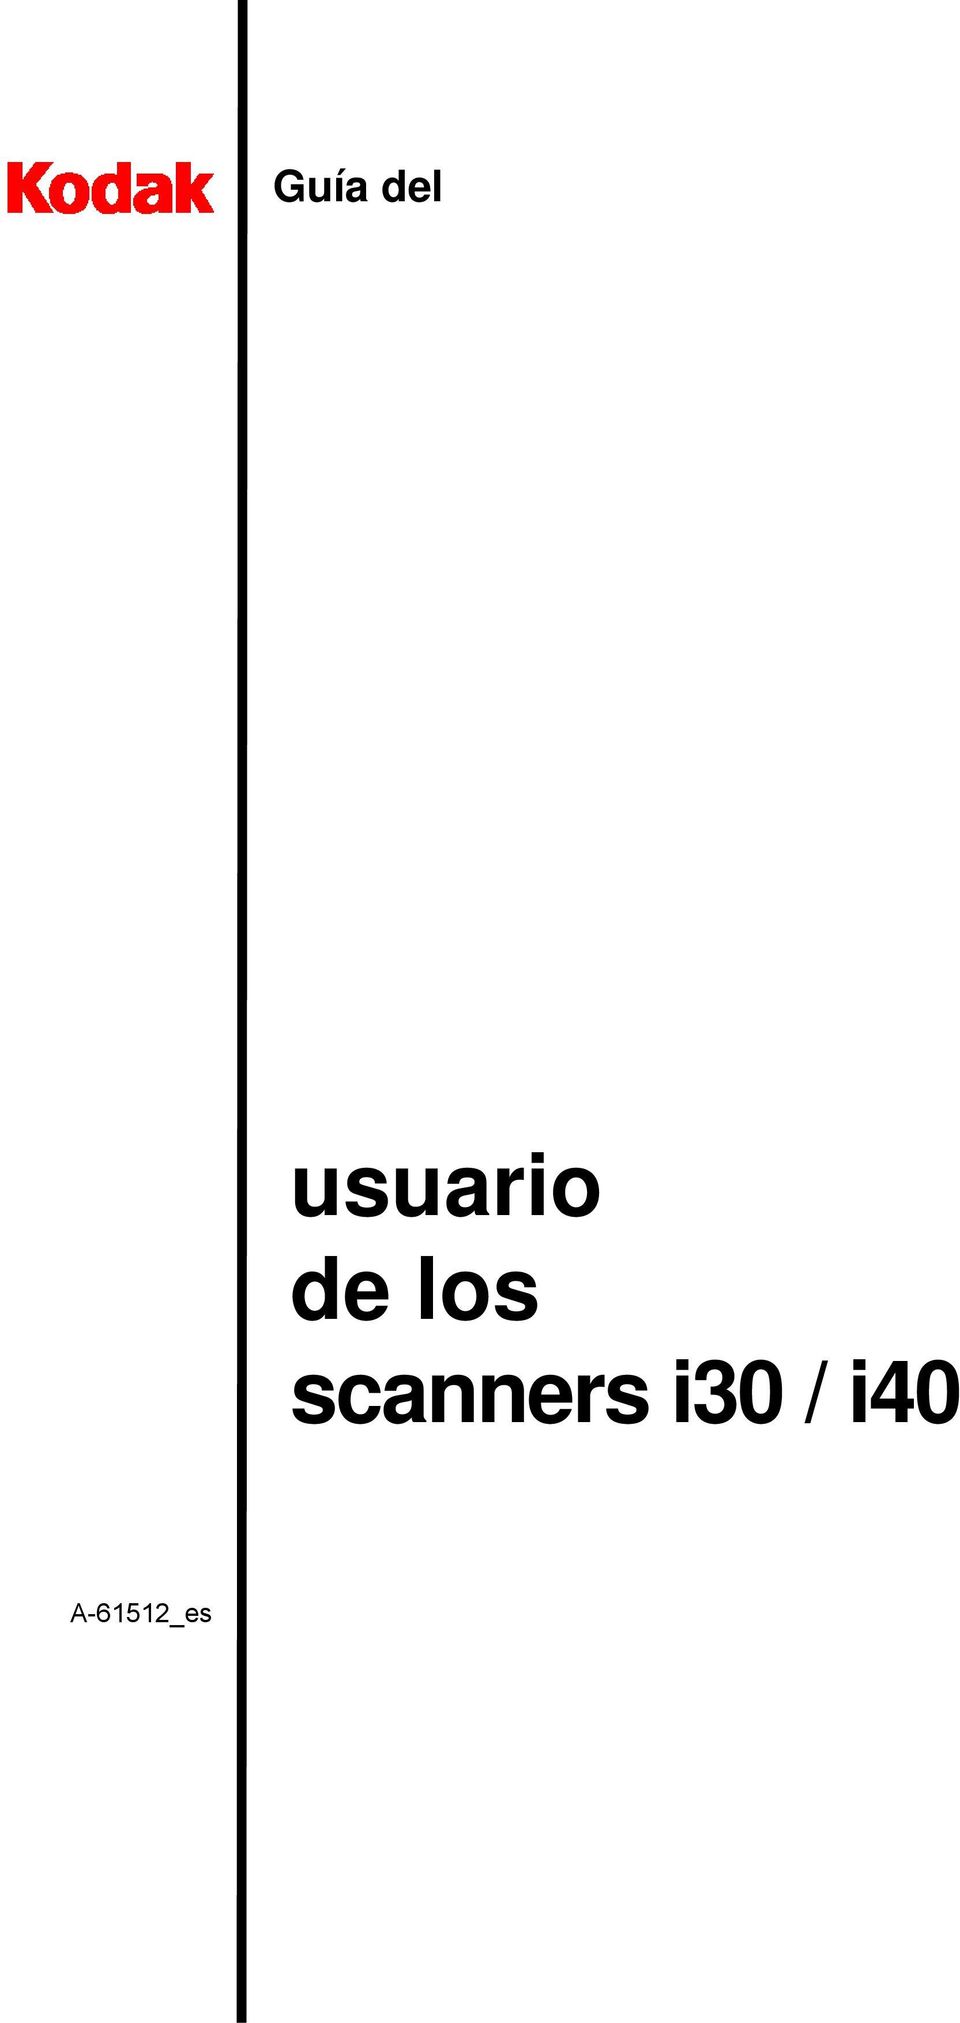 los scanners